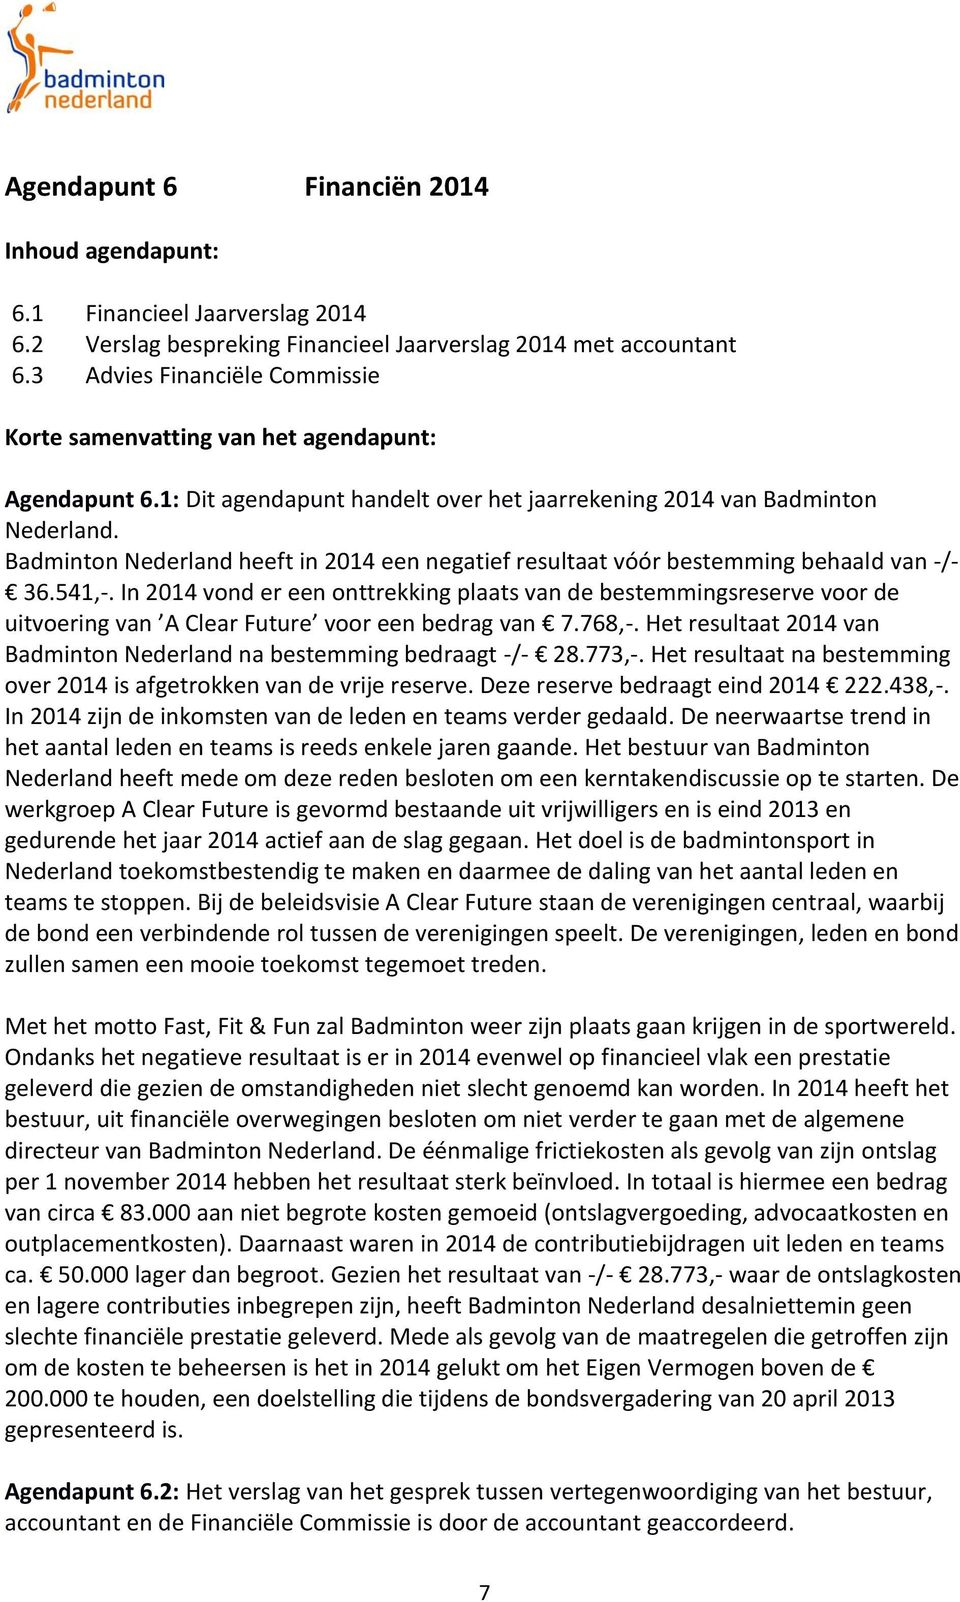 Badminton Nederland heeft in 2014 een negatief resultaat vóór bestemming behaald van -/- 36.541,-.